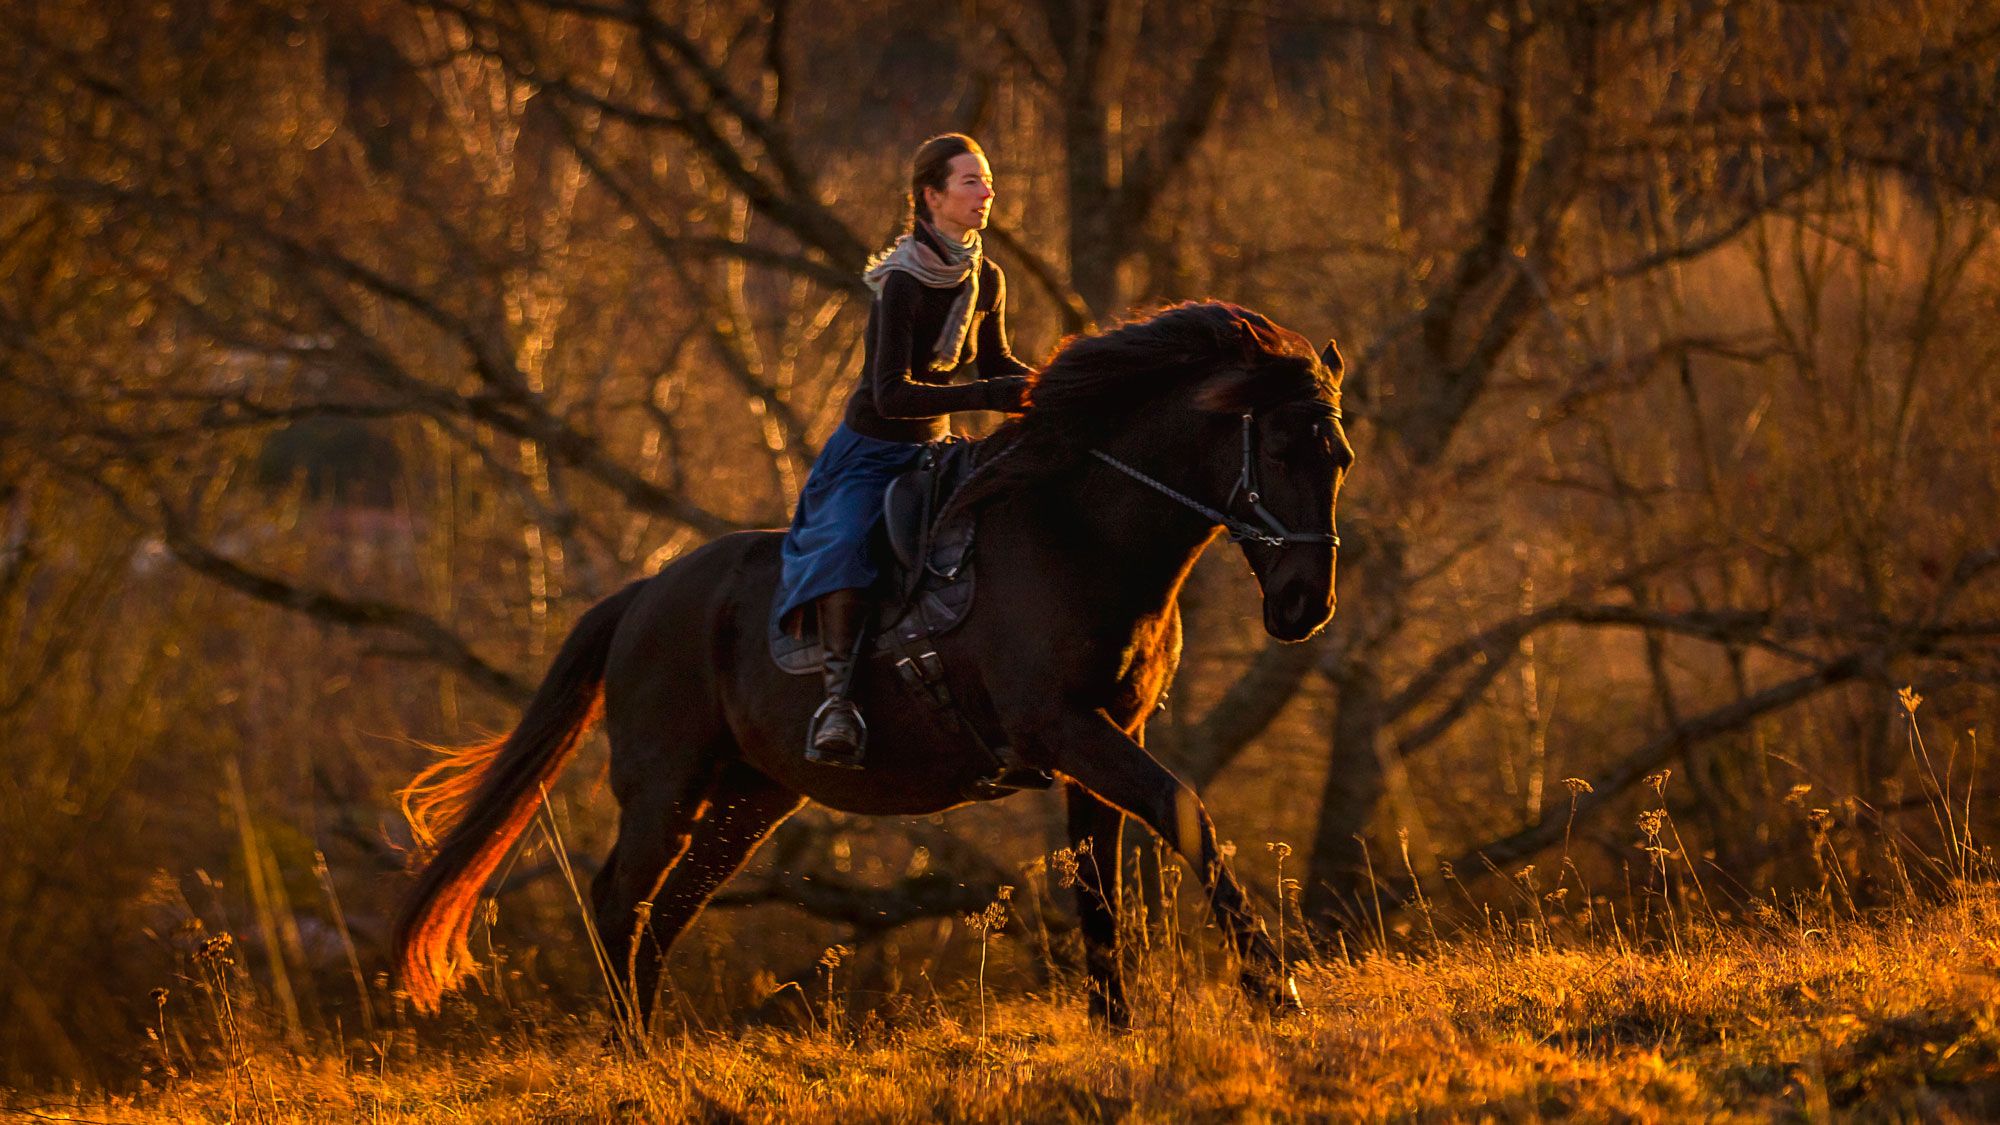 Mon cheval a peur en balade, que faire ? - Laure Souquet - Formations équestres De Femme à Cheval